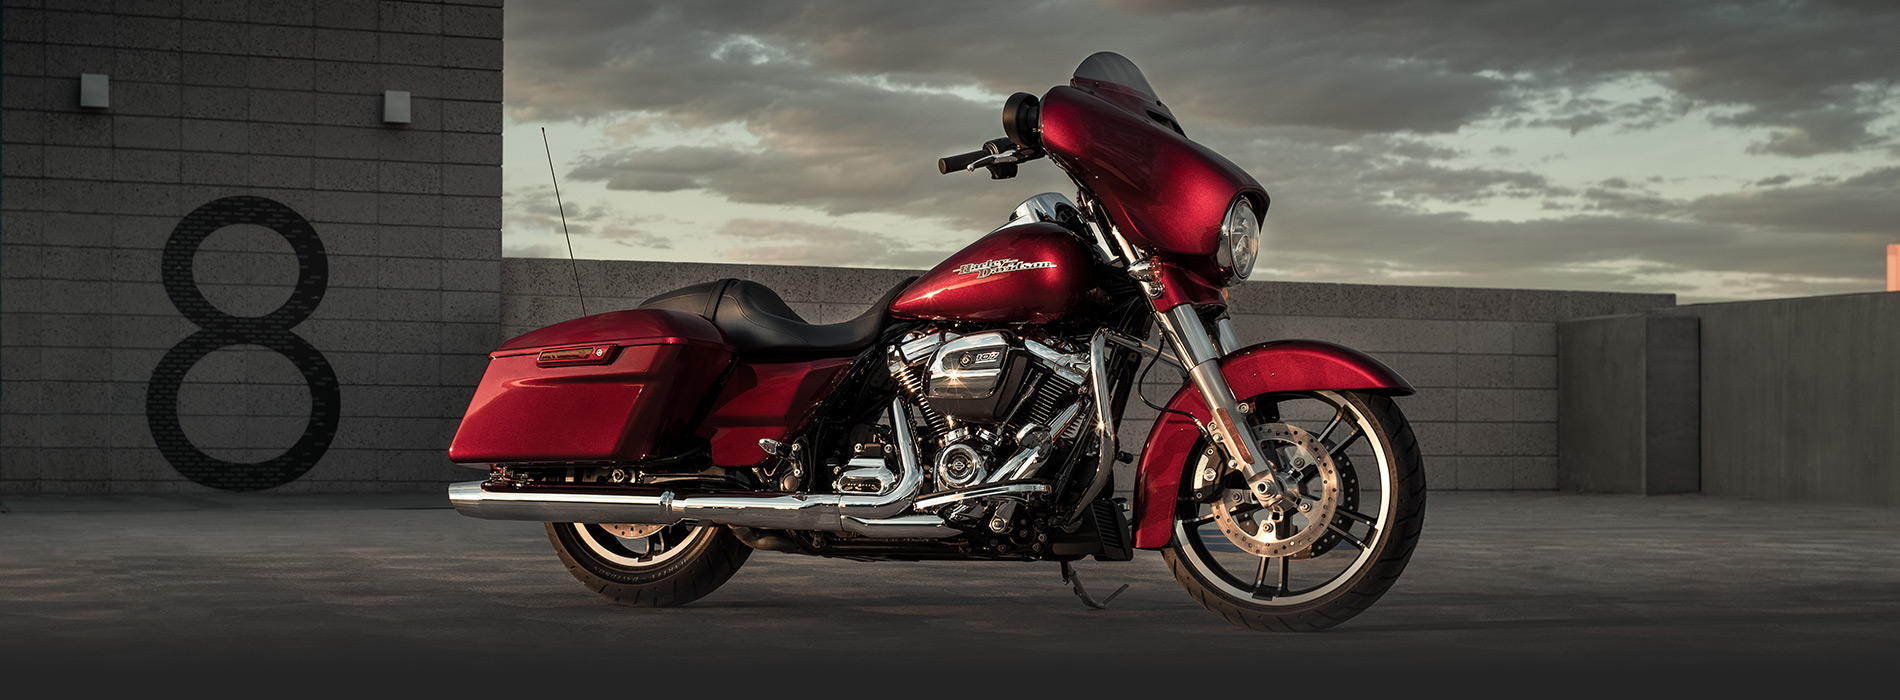 Harley-Davidson Street Glide Backgrounds on Wallpapers Vista